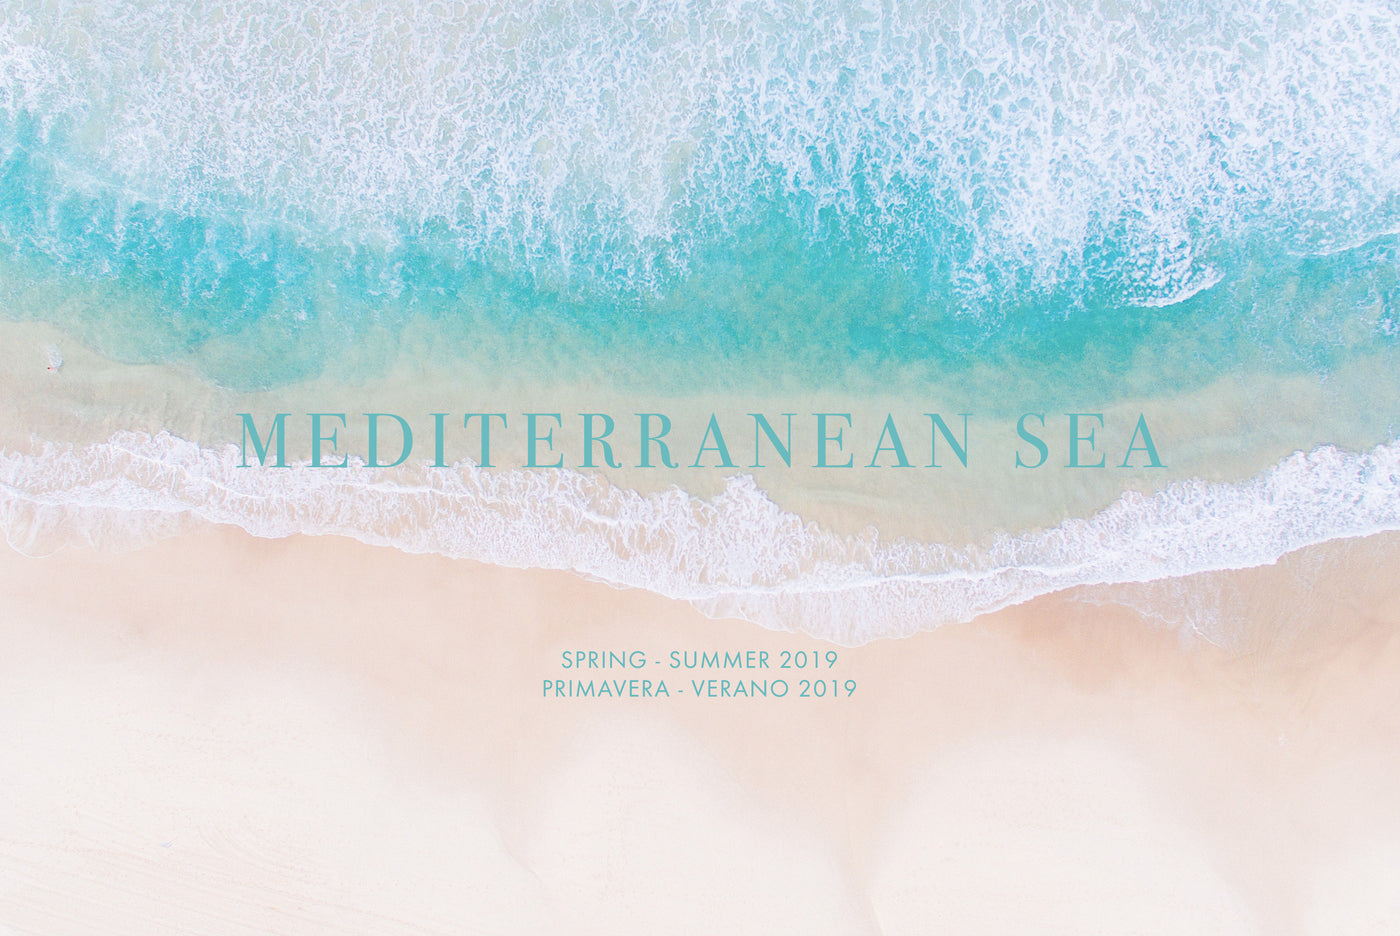 Mediterranean Sea - Primavera/Verano 2019